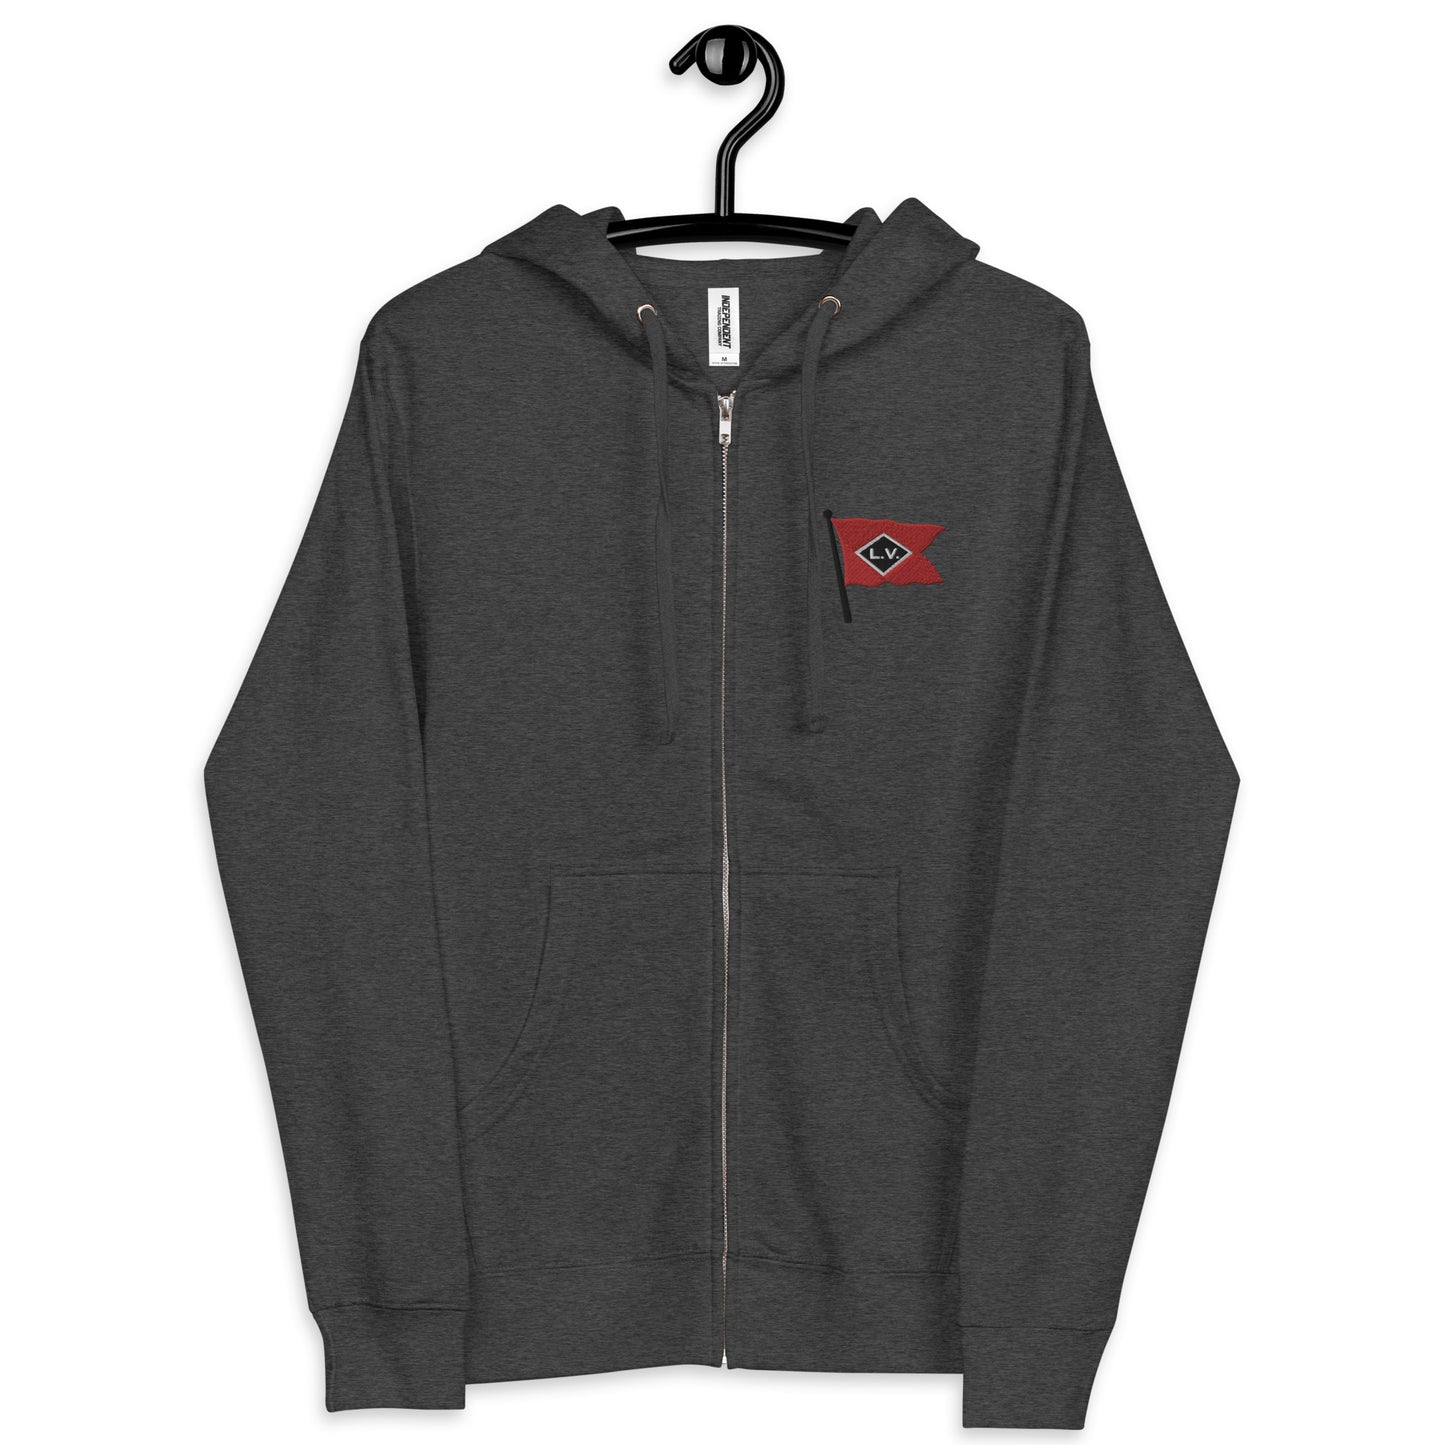 Lehigh Valley Unisex fleece zip up hoodie